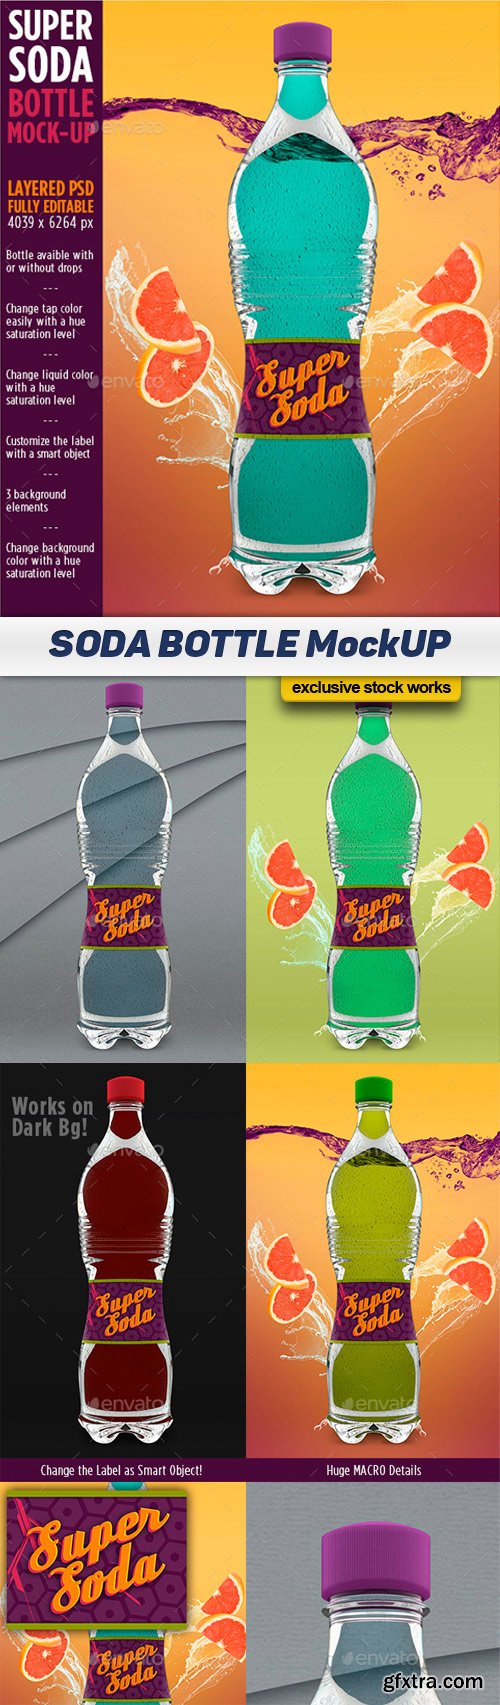 GR Super Soda Bottle - Product MockUP